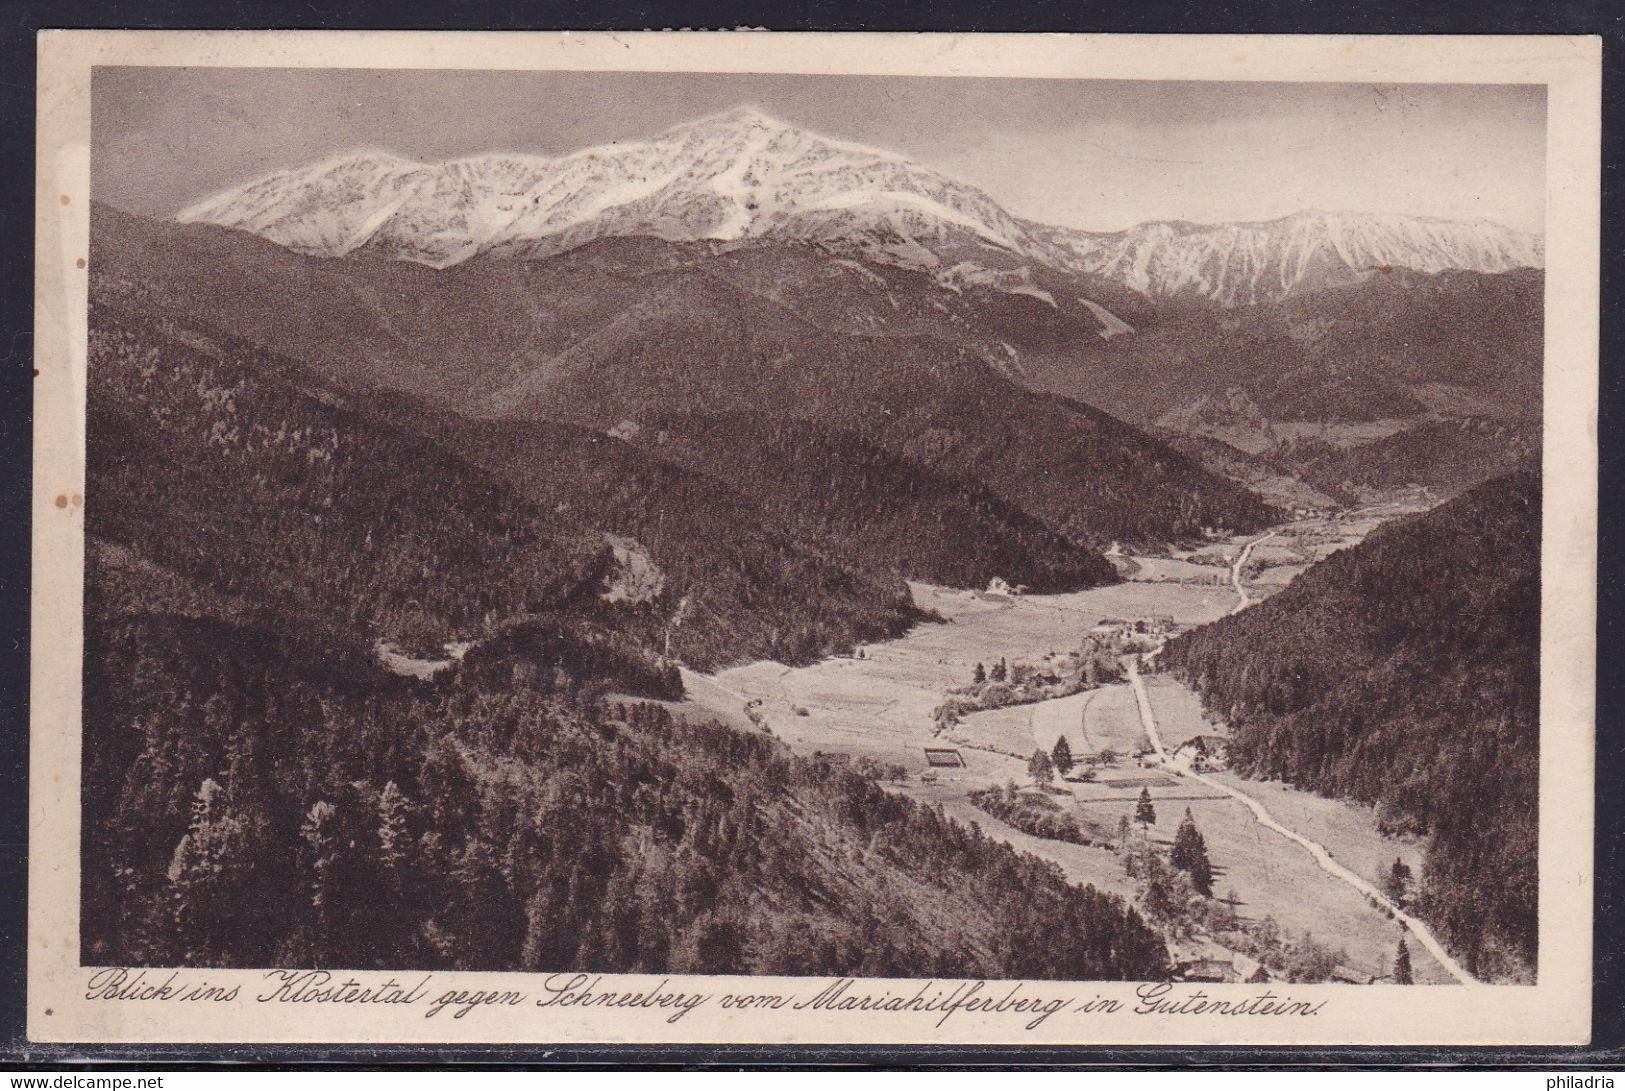 Gutenstein, General View, Mailed 1929 - Gutenstein